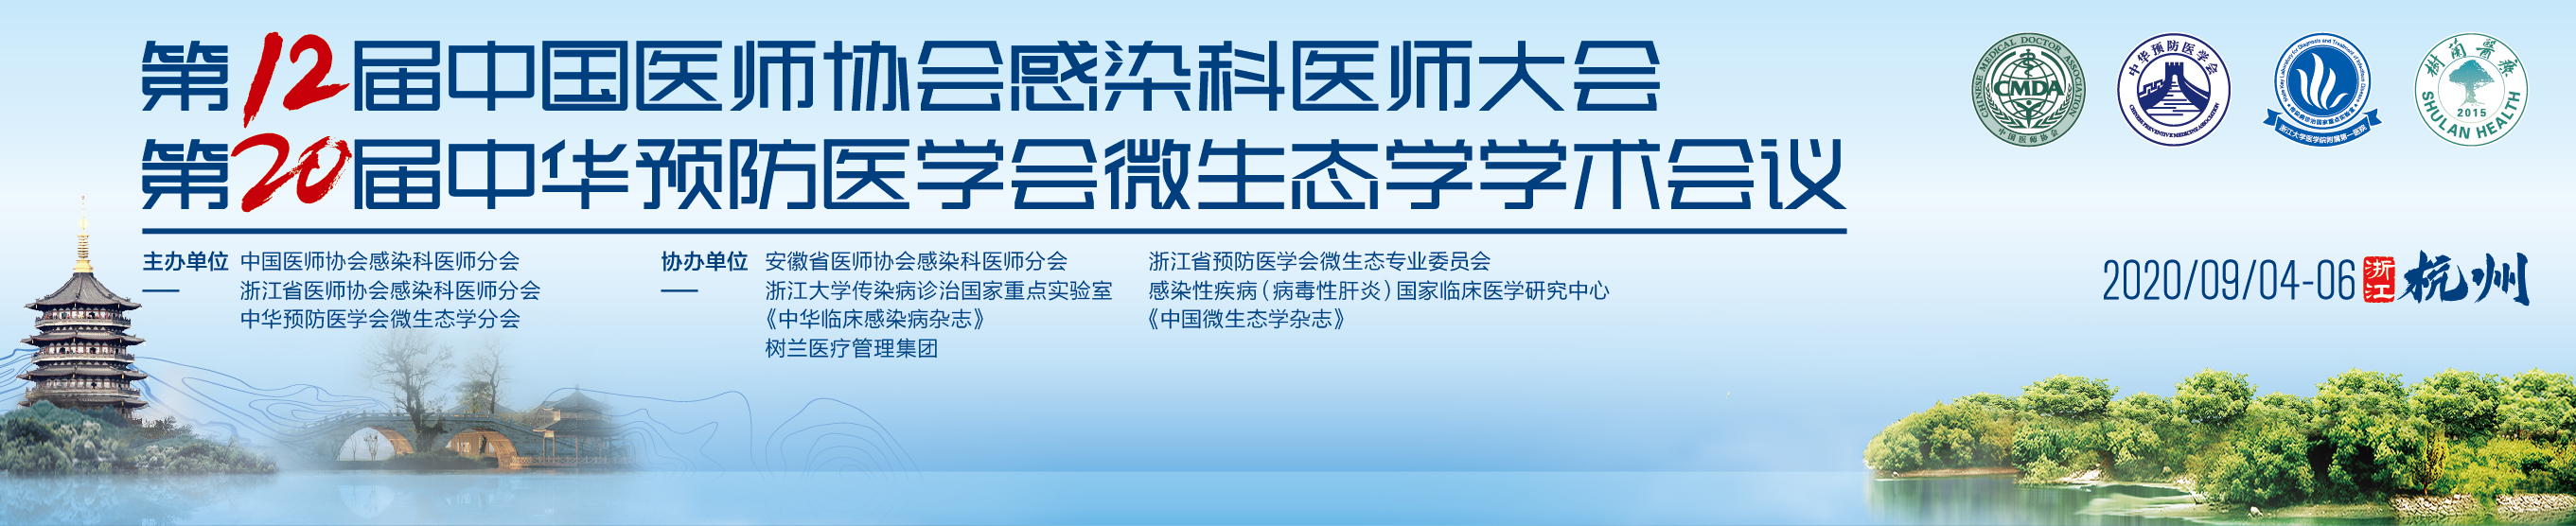 第十二届中国医师协会感染科医师大会 第二十届中华预防医学会微生态学学术会议